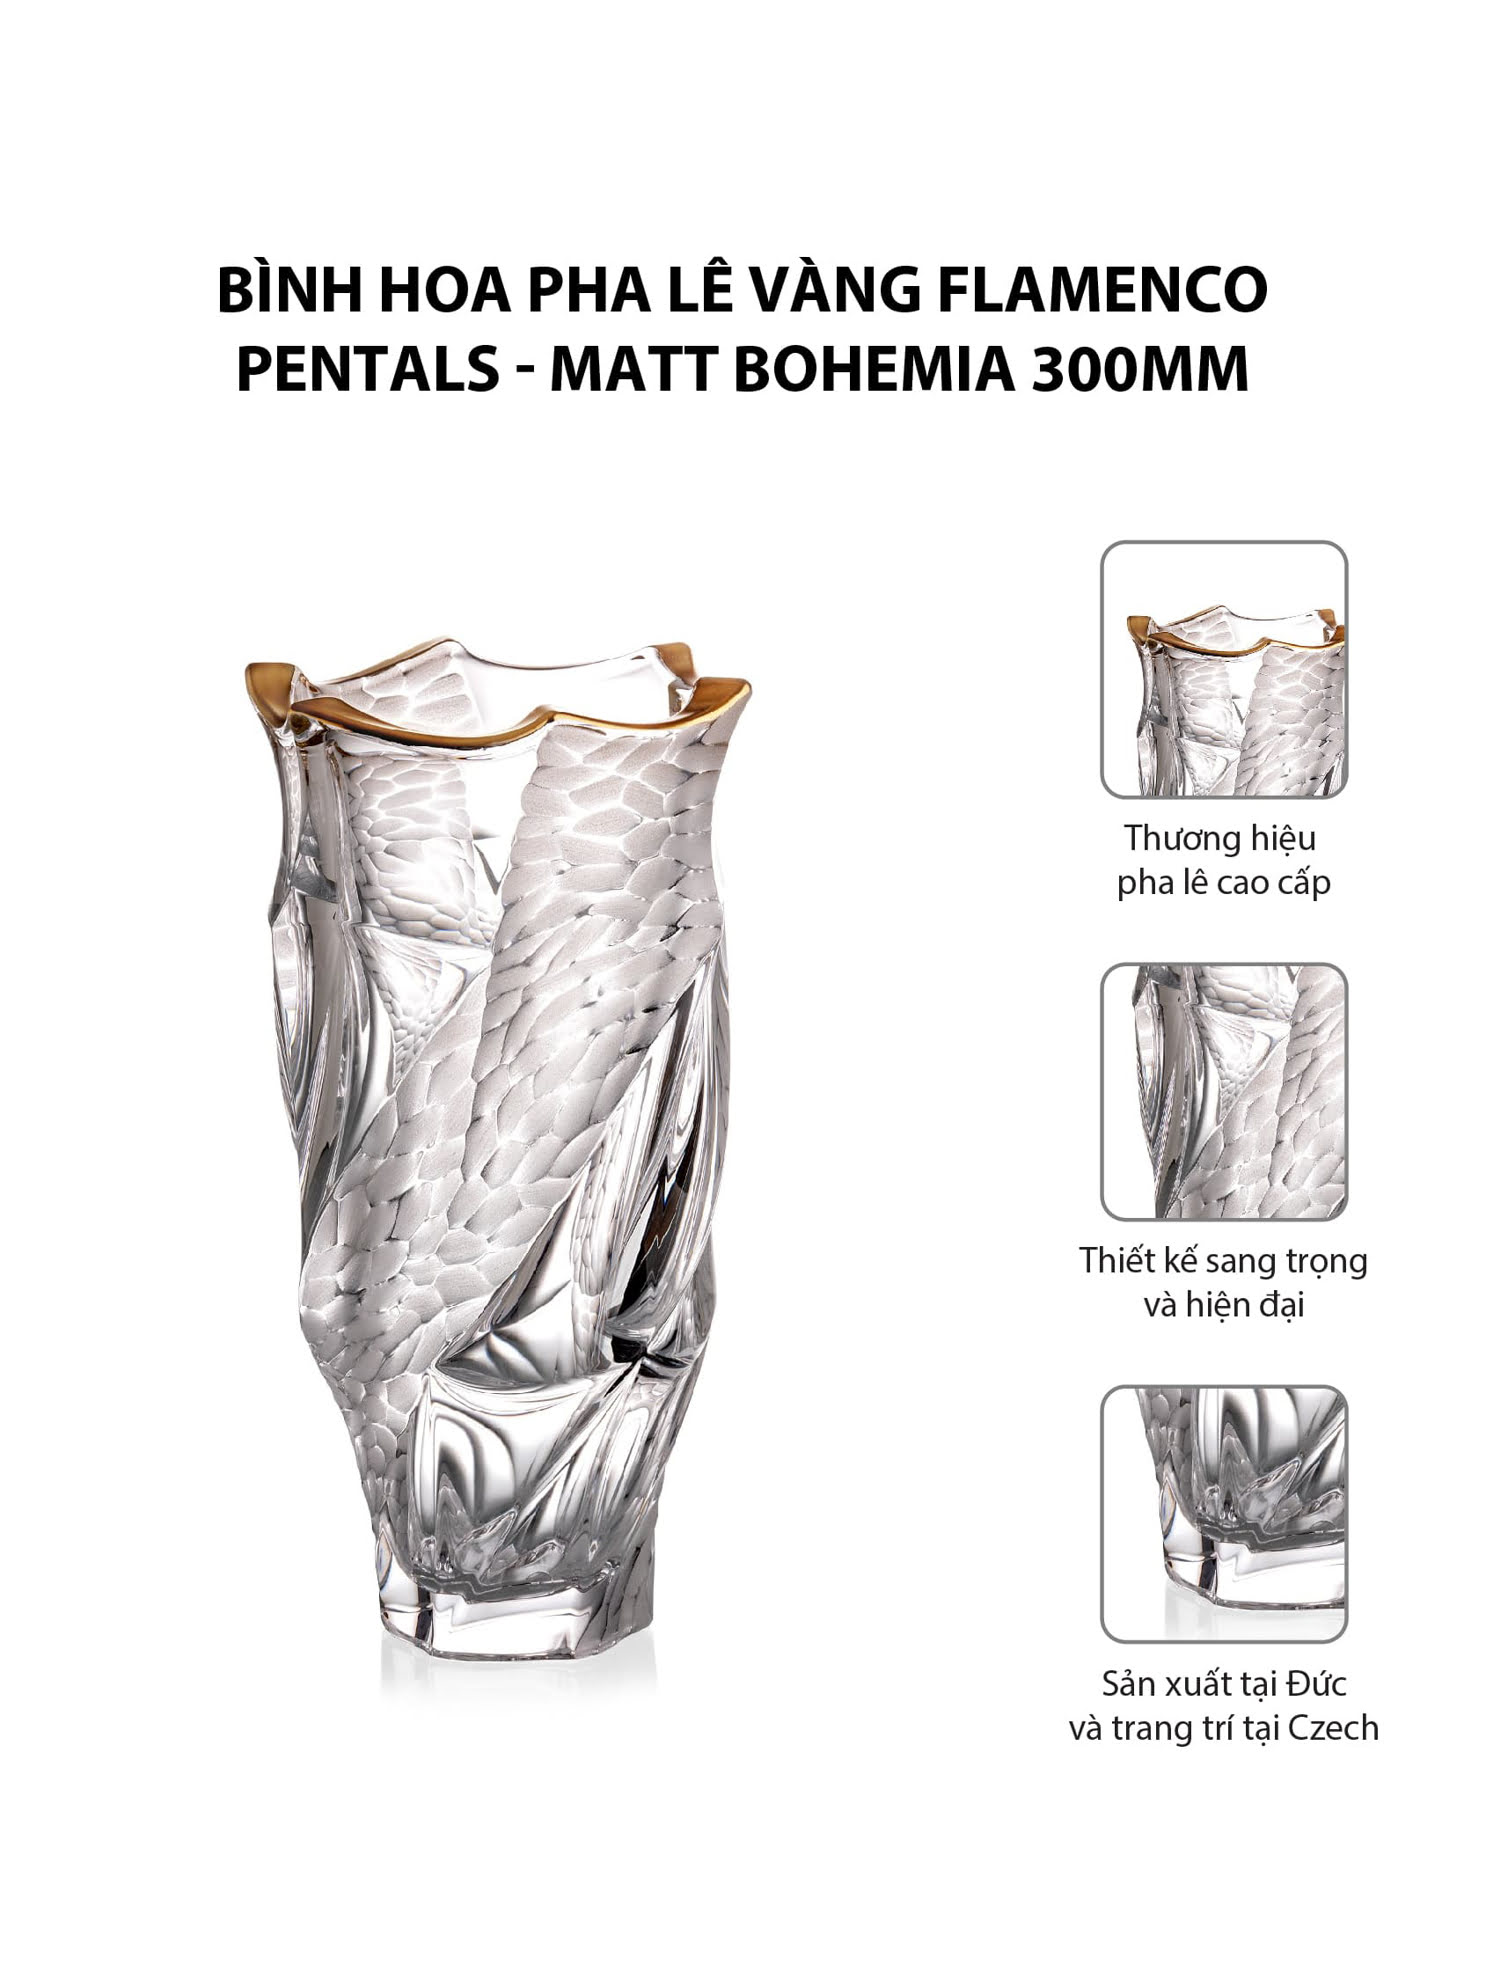 Bình hoa pha lê vàng Flamenco Pentals - Matt Bohemia 300mm